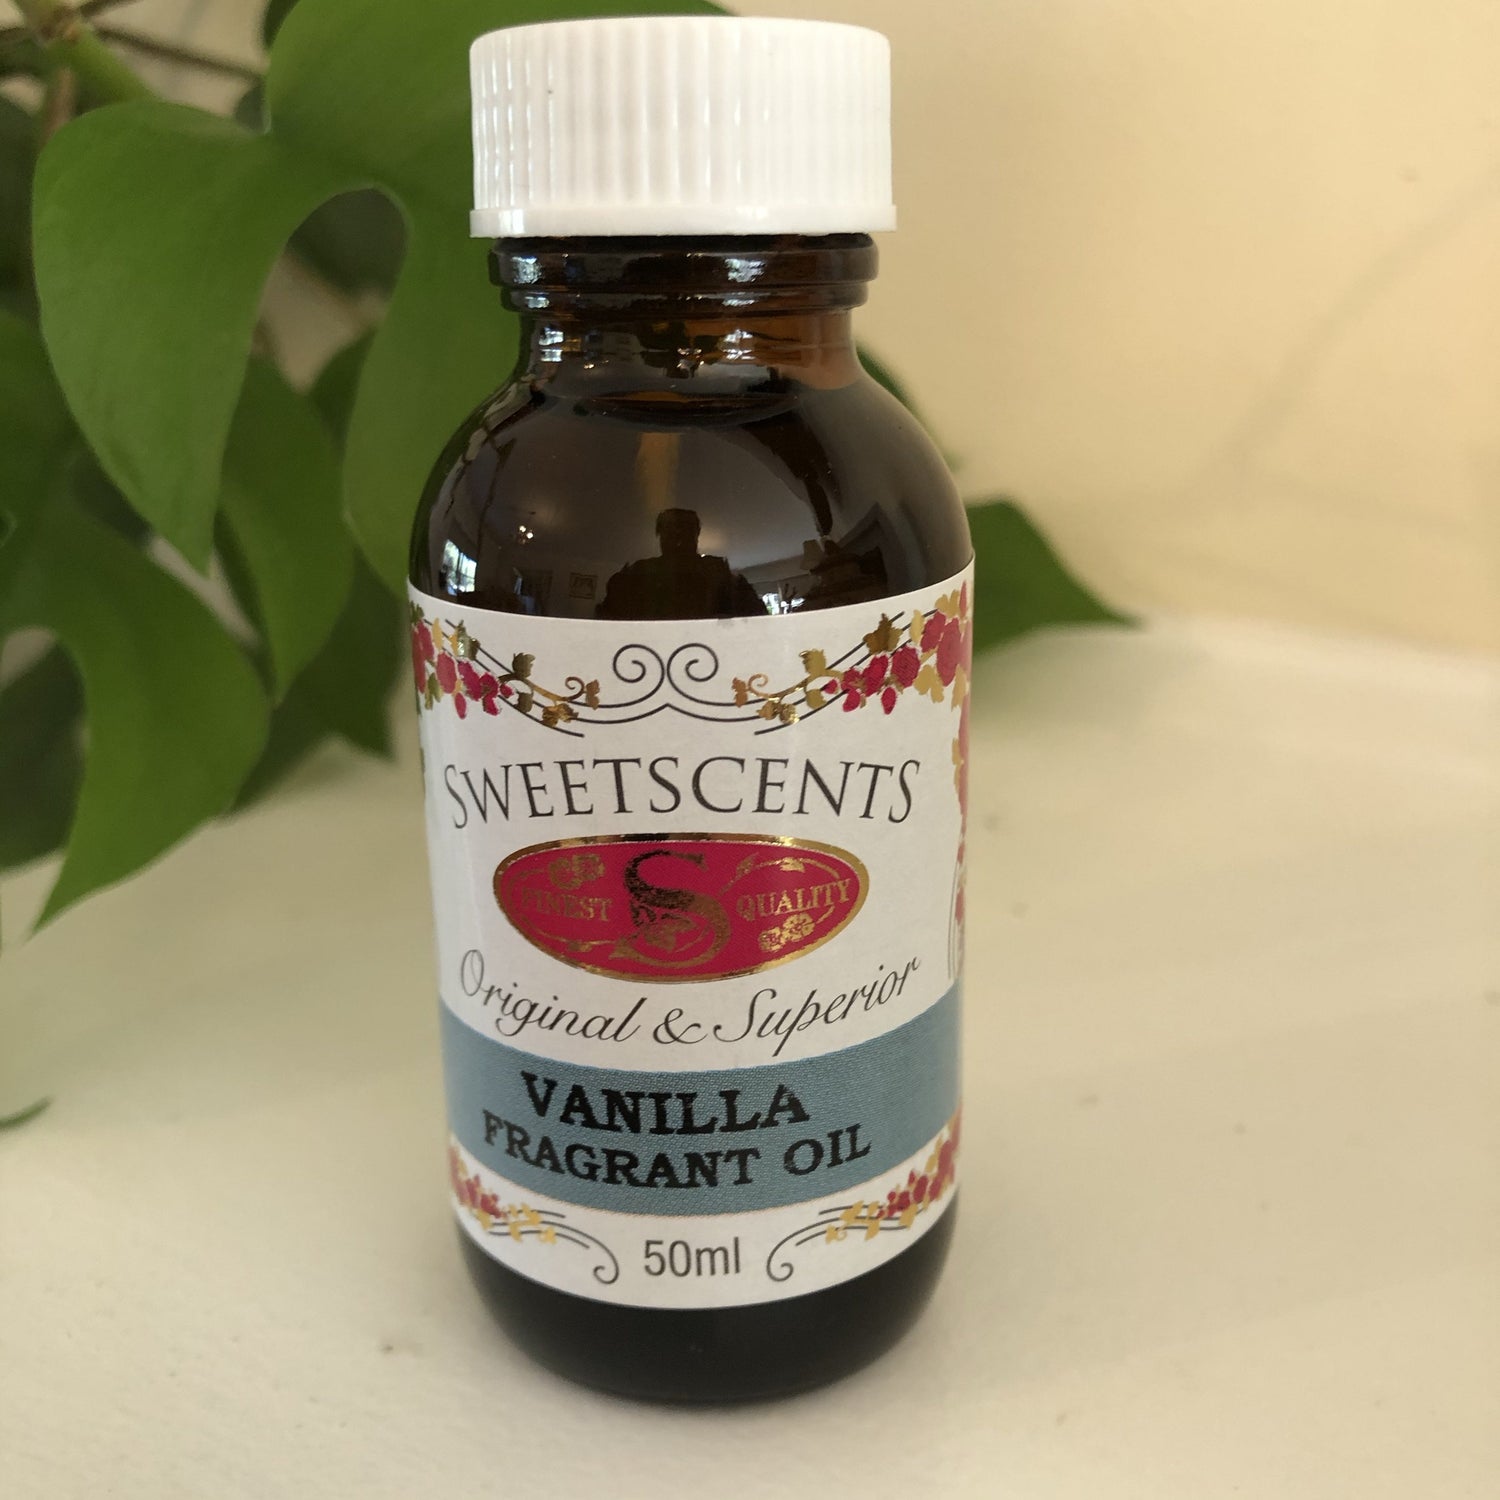 Vanilla Sweetscents Fragrant Oil 50ml - JohnnyBoyAus